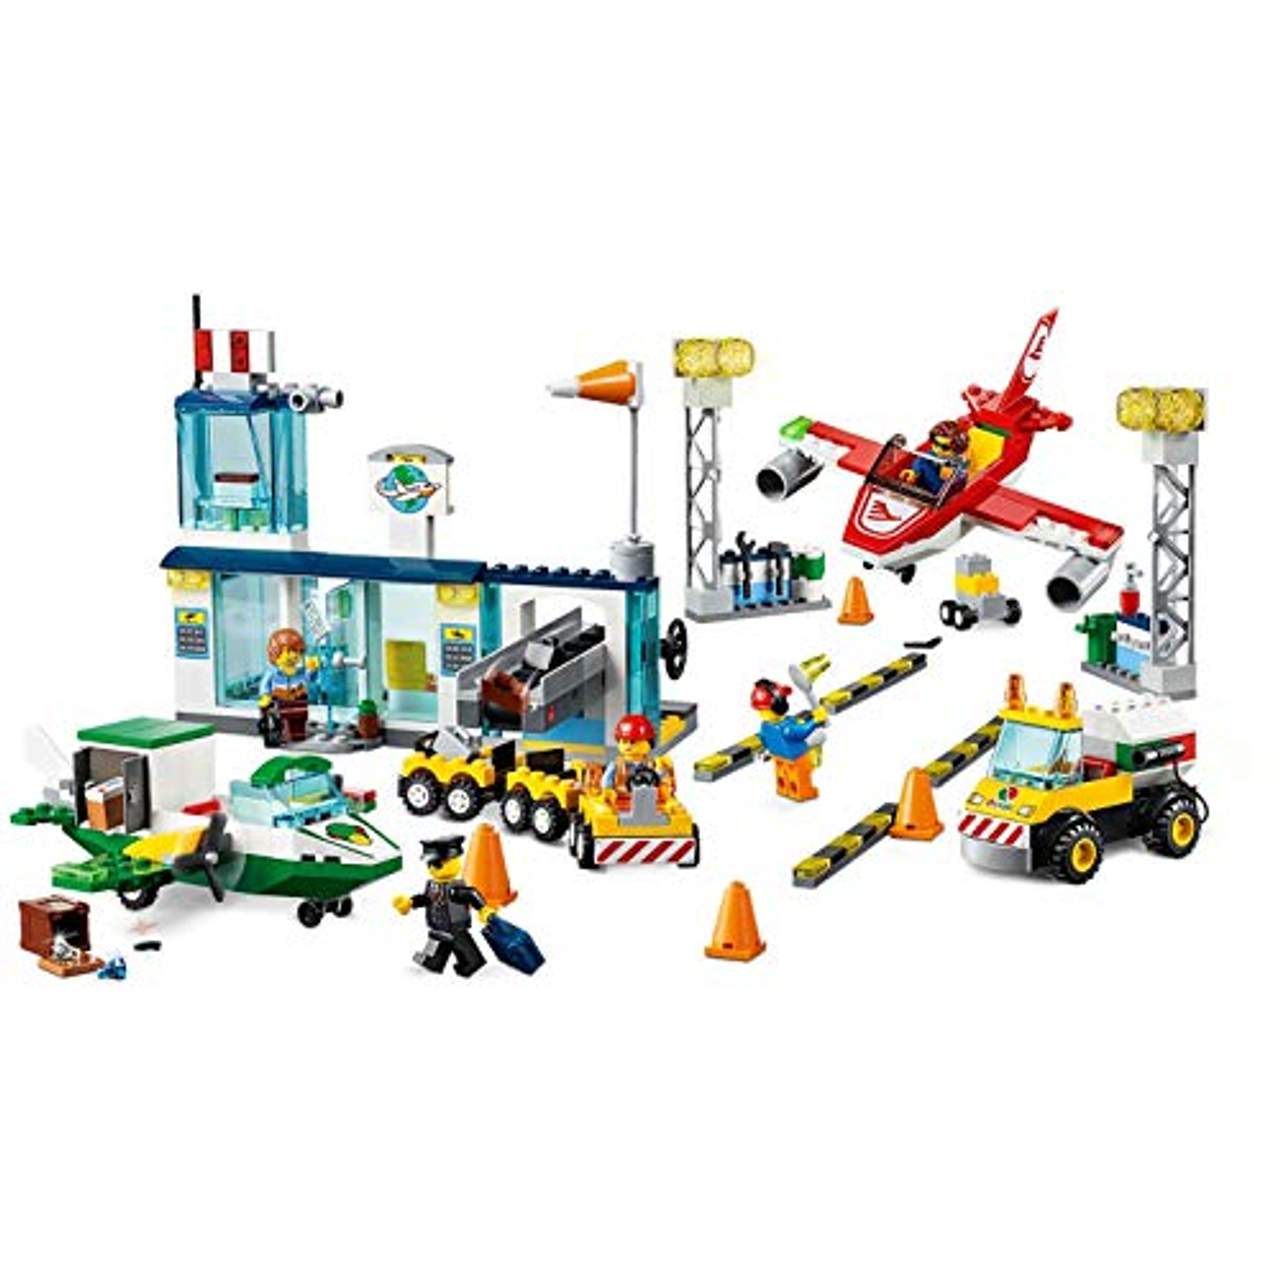 LEGO Juniors Flughafen 10764 Klassisches Spielzeug